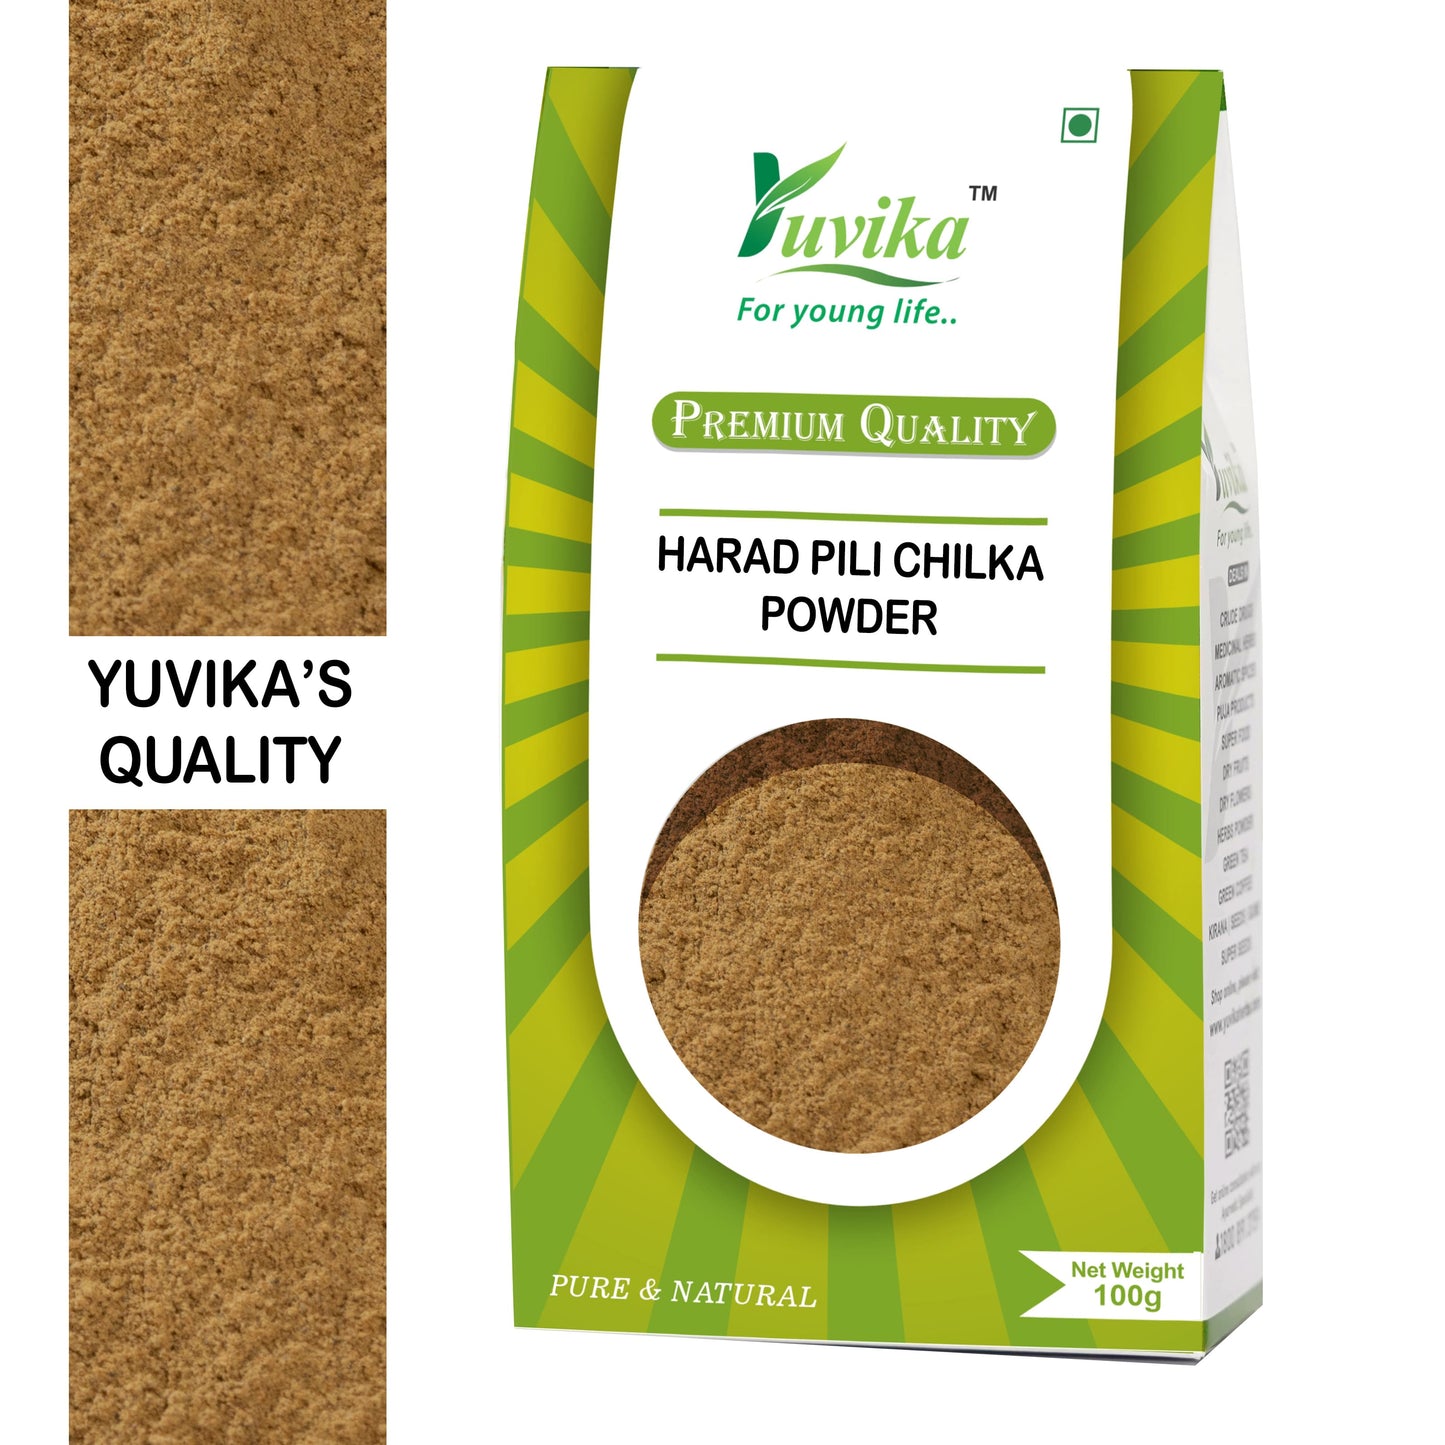 Harad Pili Chilka Powder - Haritaki Powder - Harad Badi Chilka Powder - Yellow Terminalia Chebula (100g)